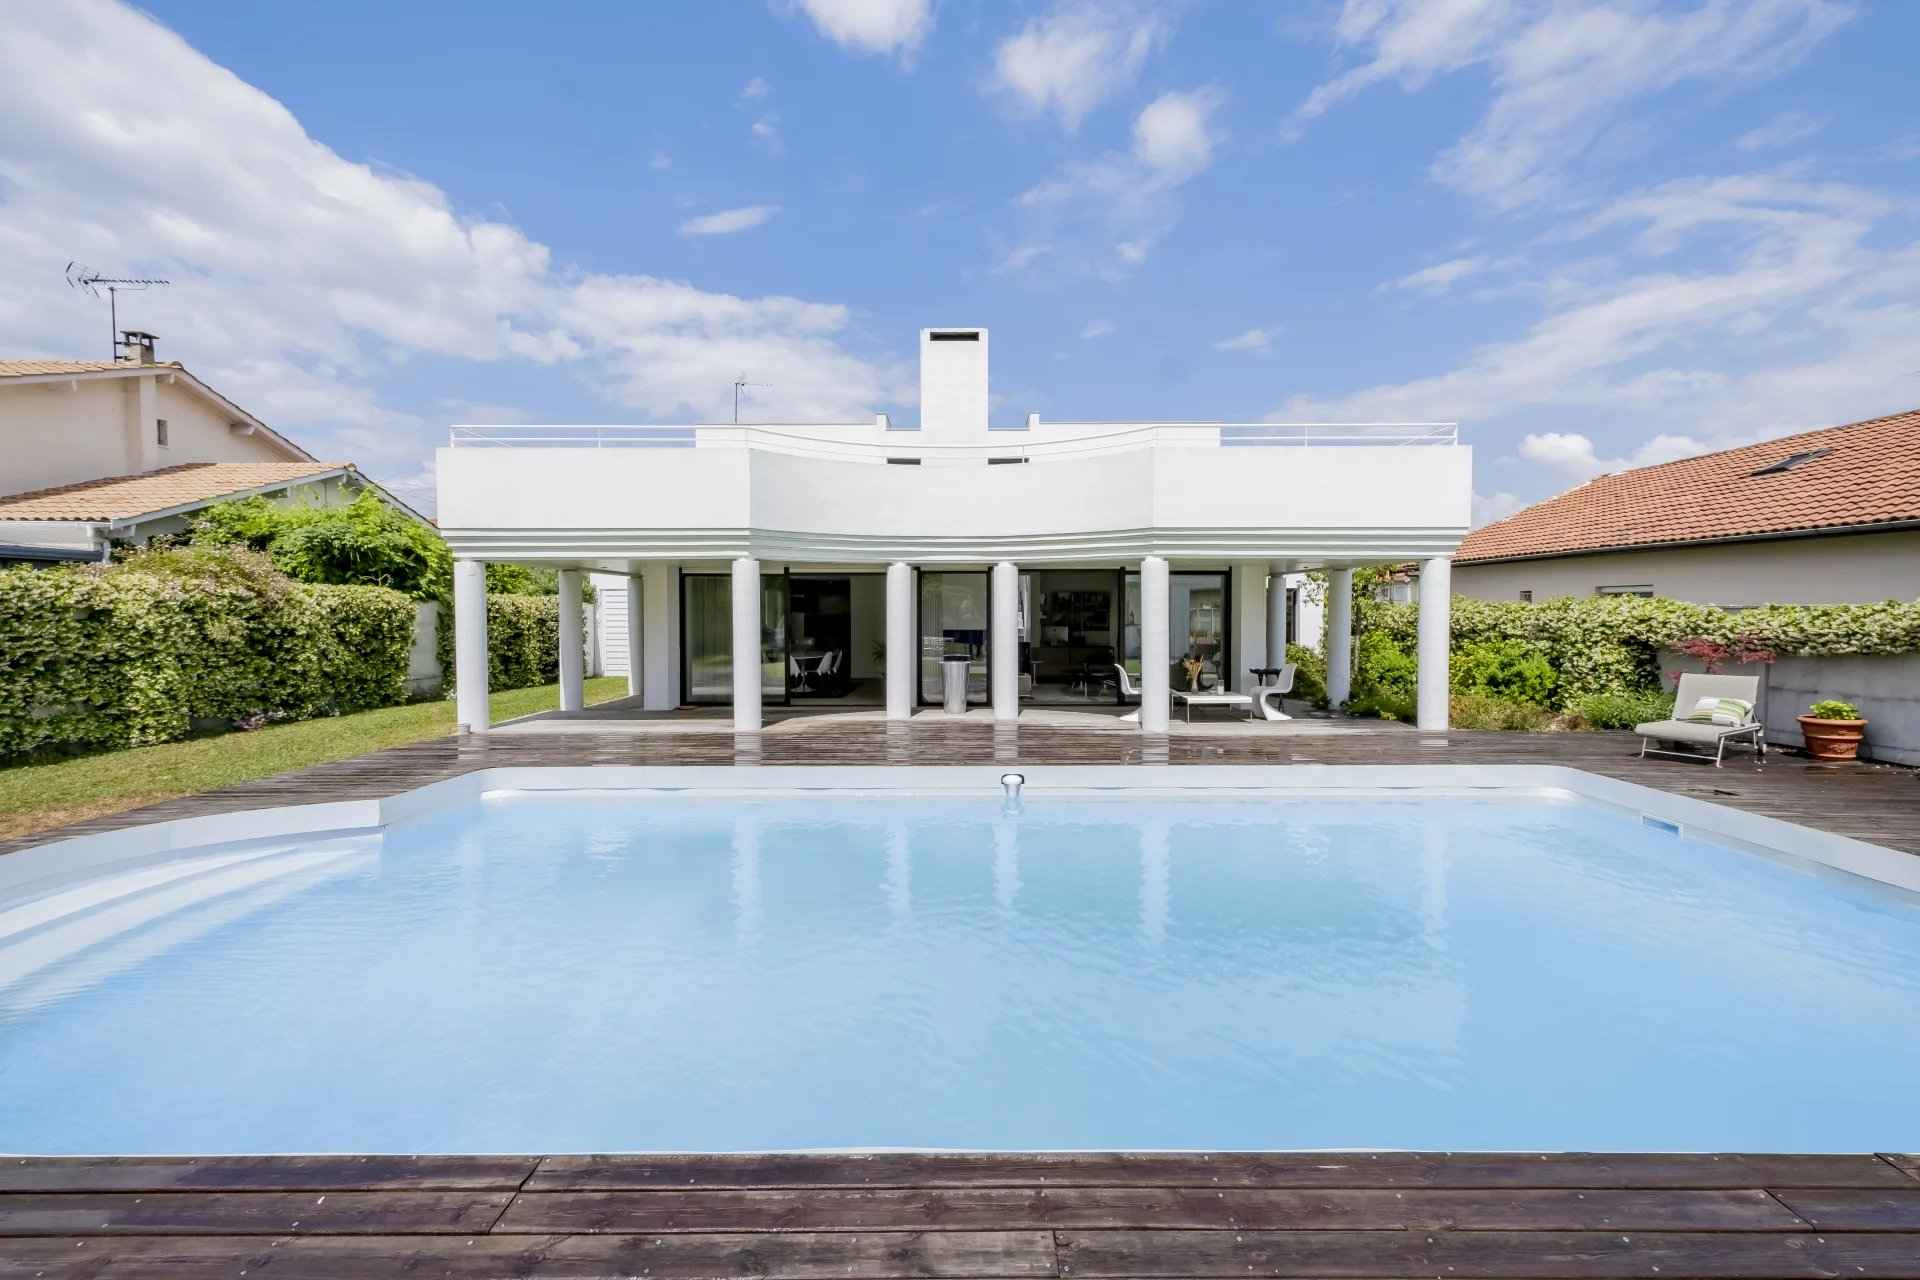 Maison à vendre Eysines de 245 m2 avec piscine et garage